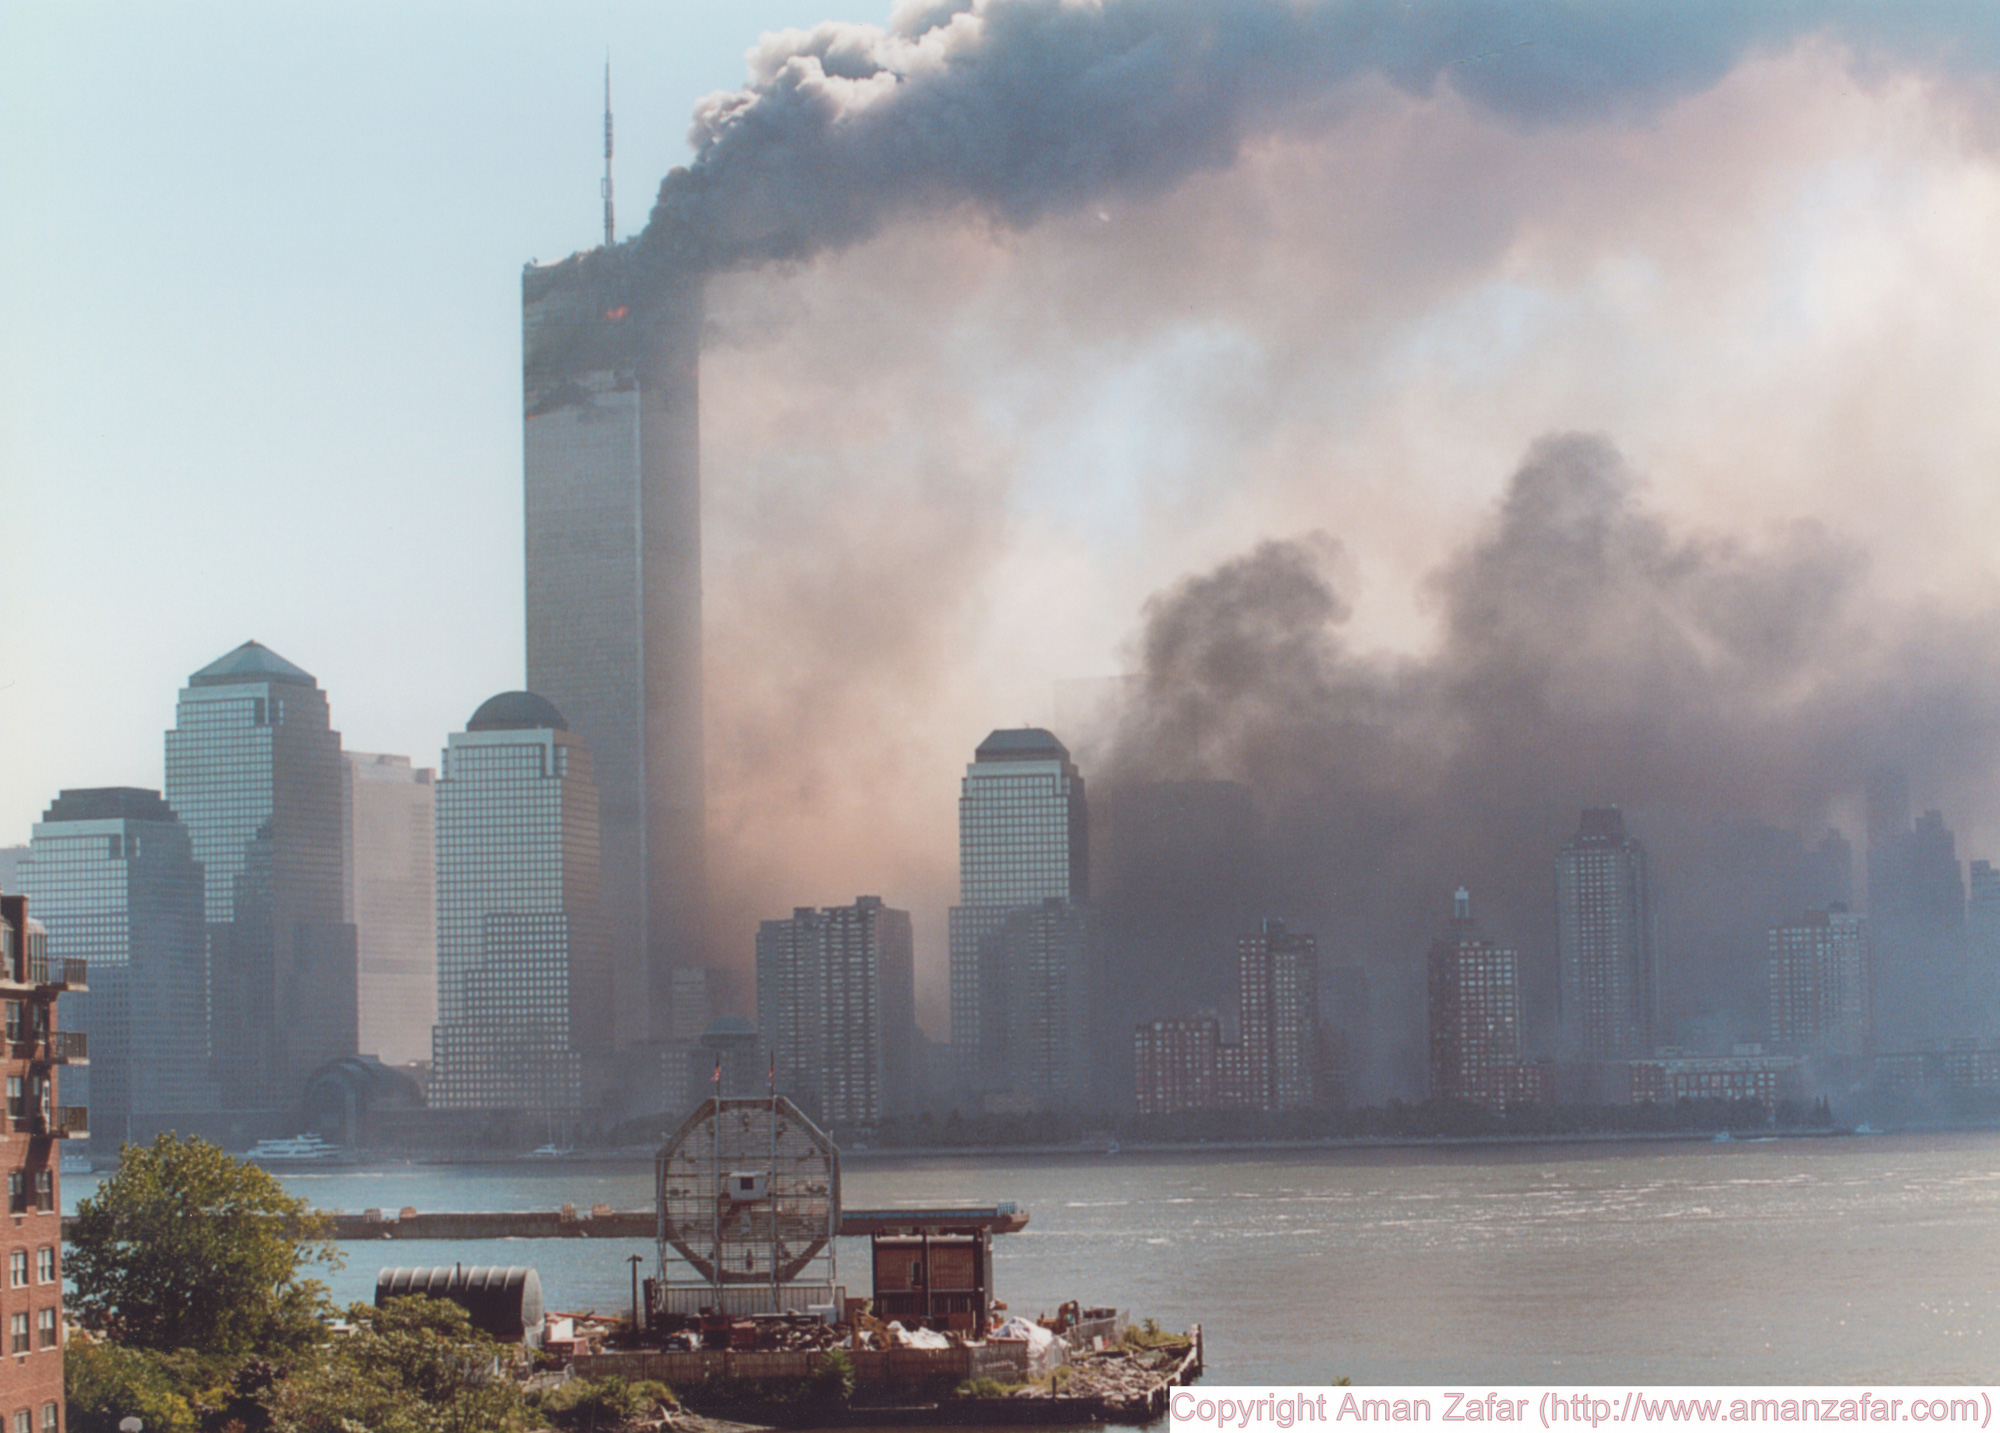 Khoảnh khắc yên bình của Trung tâm Thương mại Thế giới trước vụ khủng bố 11/9 nằm lại trong ký ức của người Mỹ - Ảnh 20.